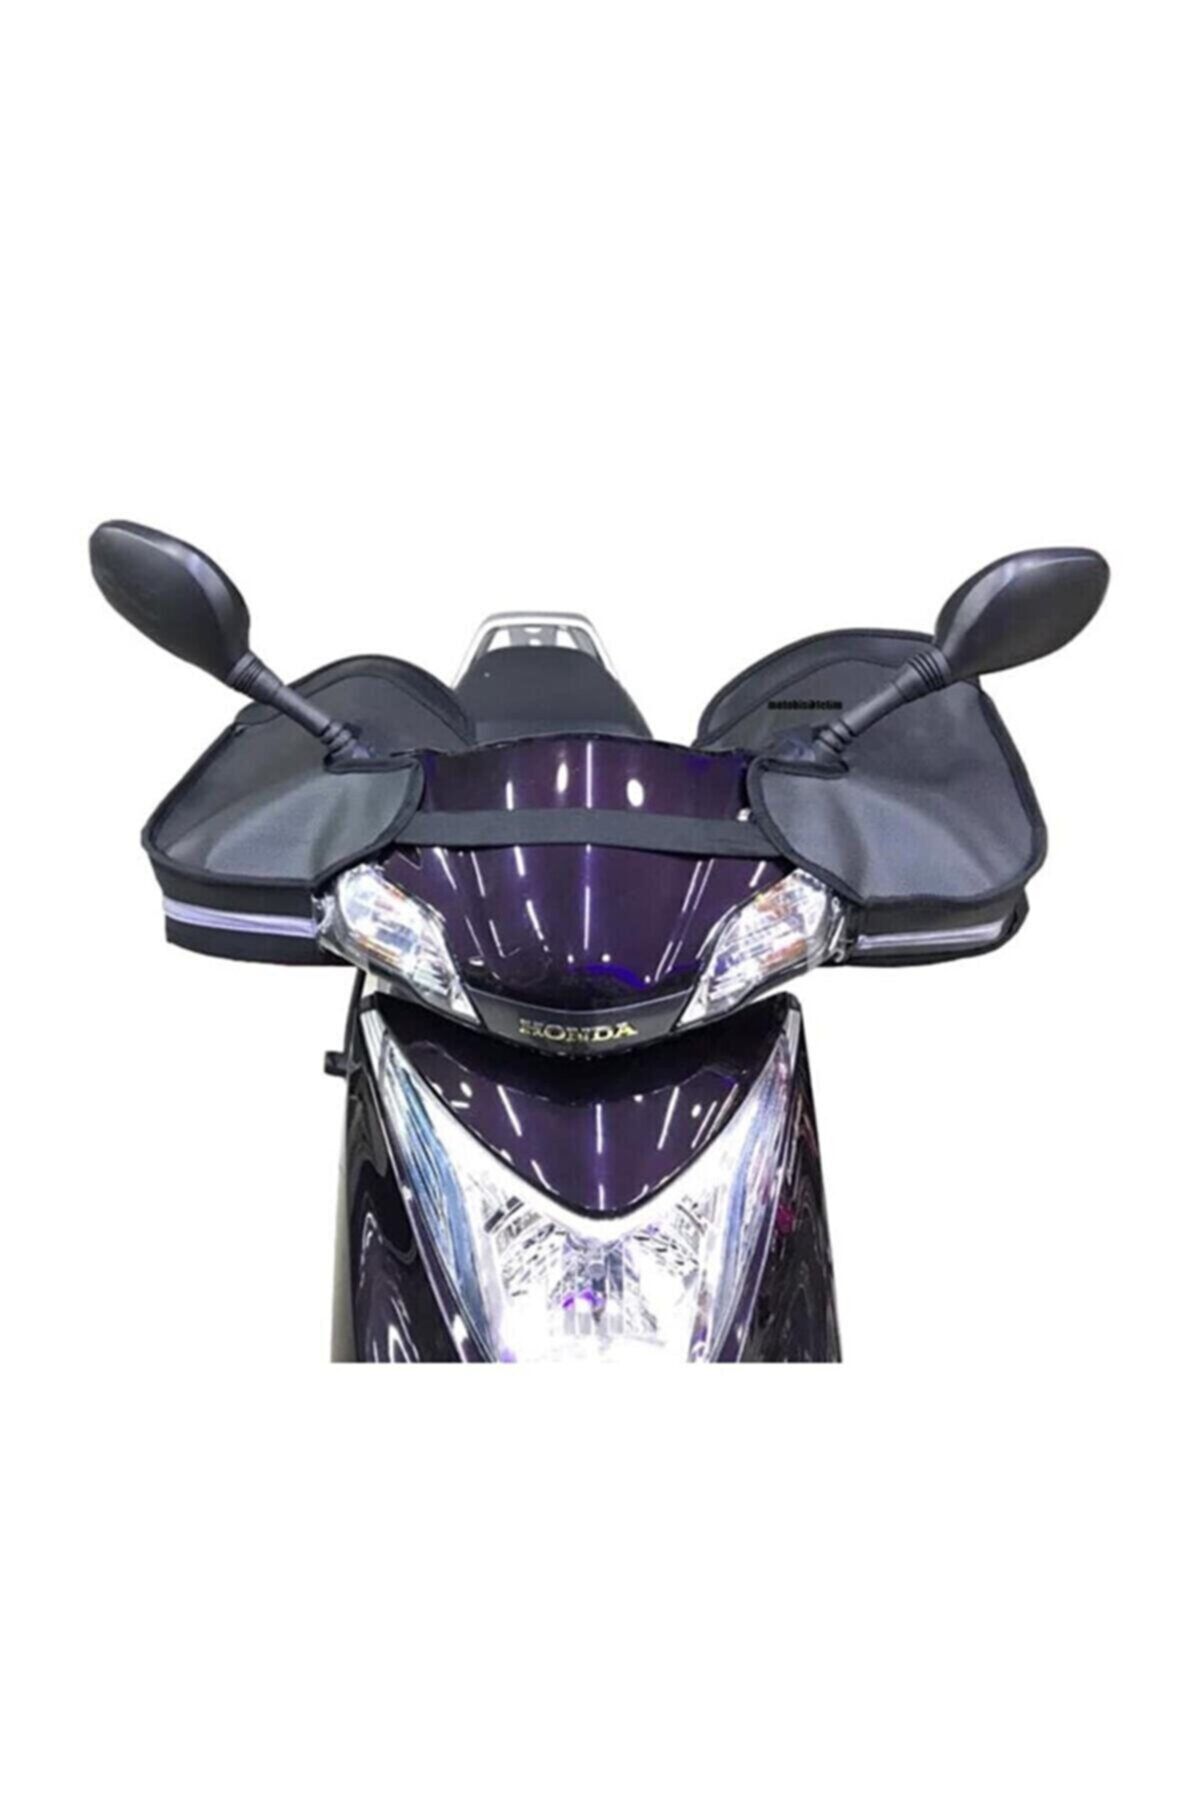 KNT Motosiklet Termal El Koruyucu Rüzgar Koruyucu Reflektörlü [scooter, Cub Modelleri] Elkoruma